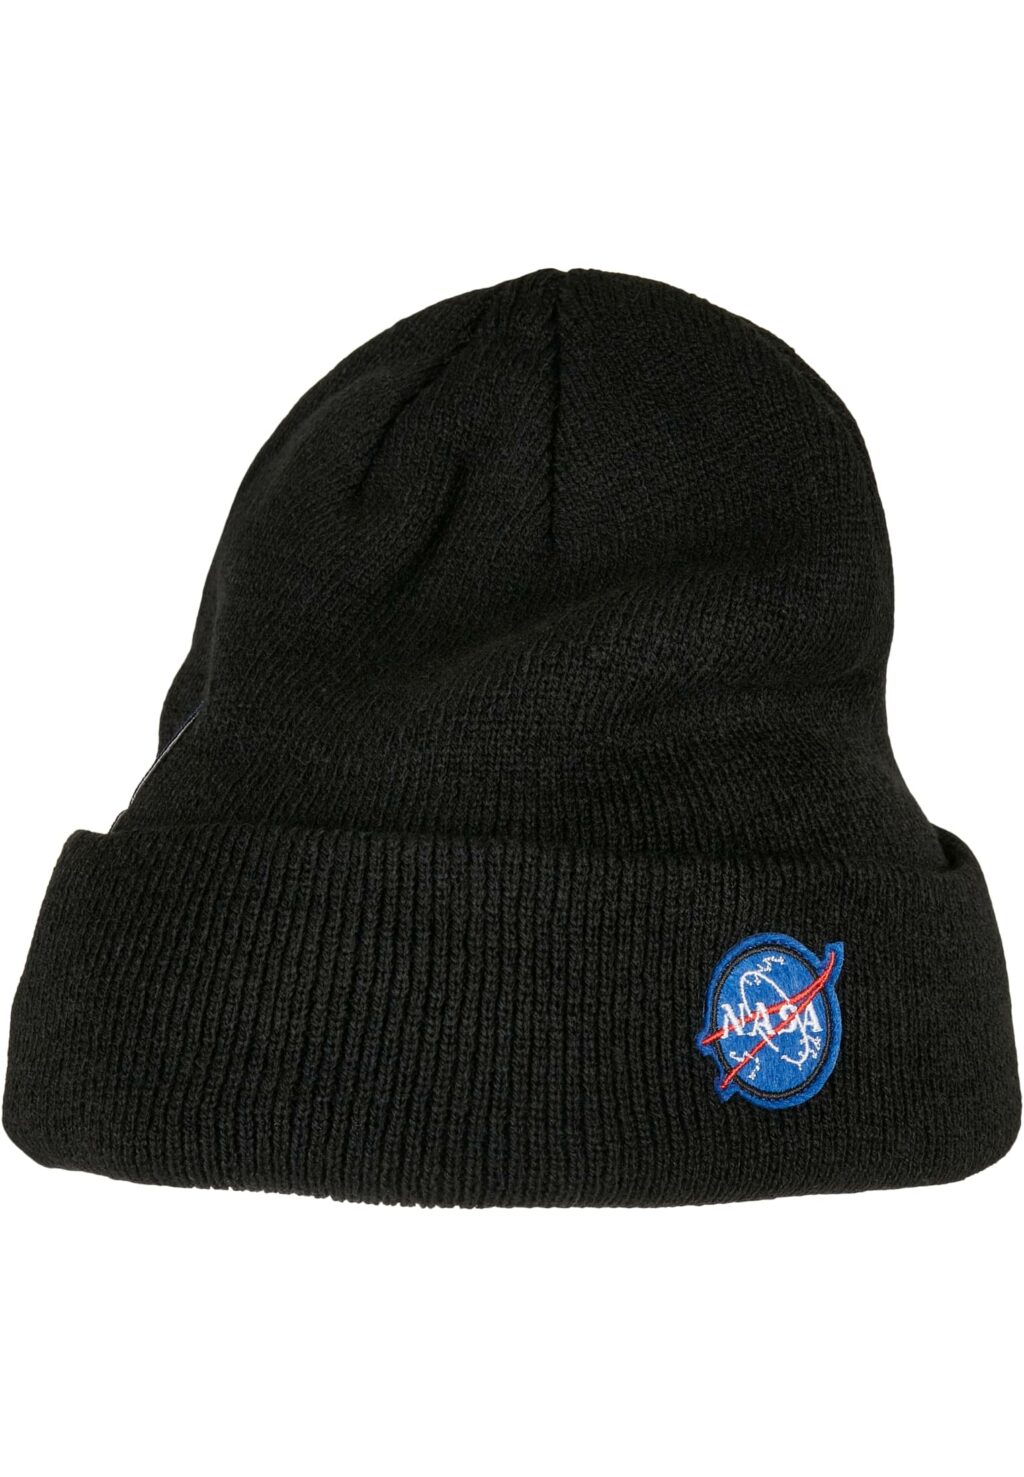 NASA Embroidery Beanie black one MT2081